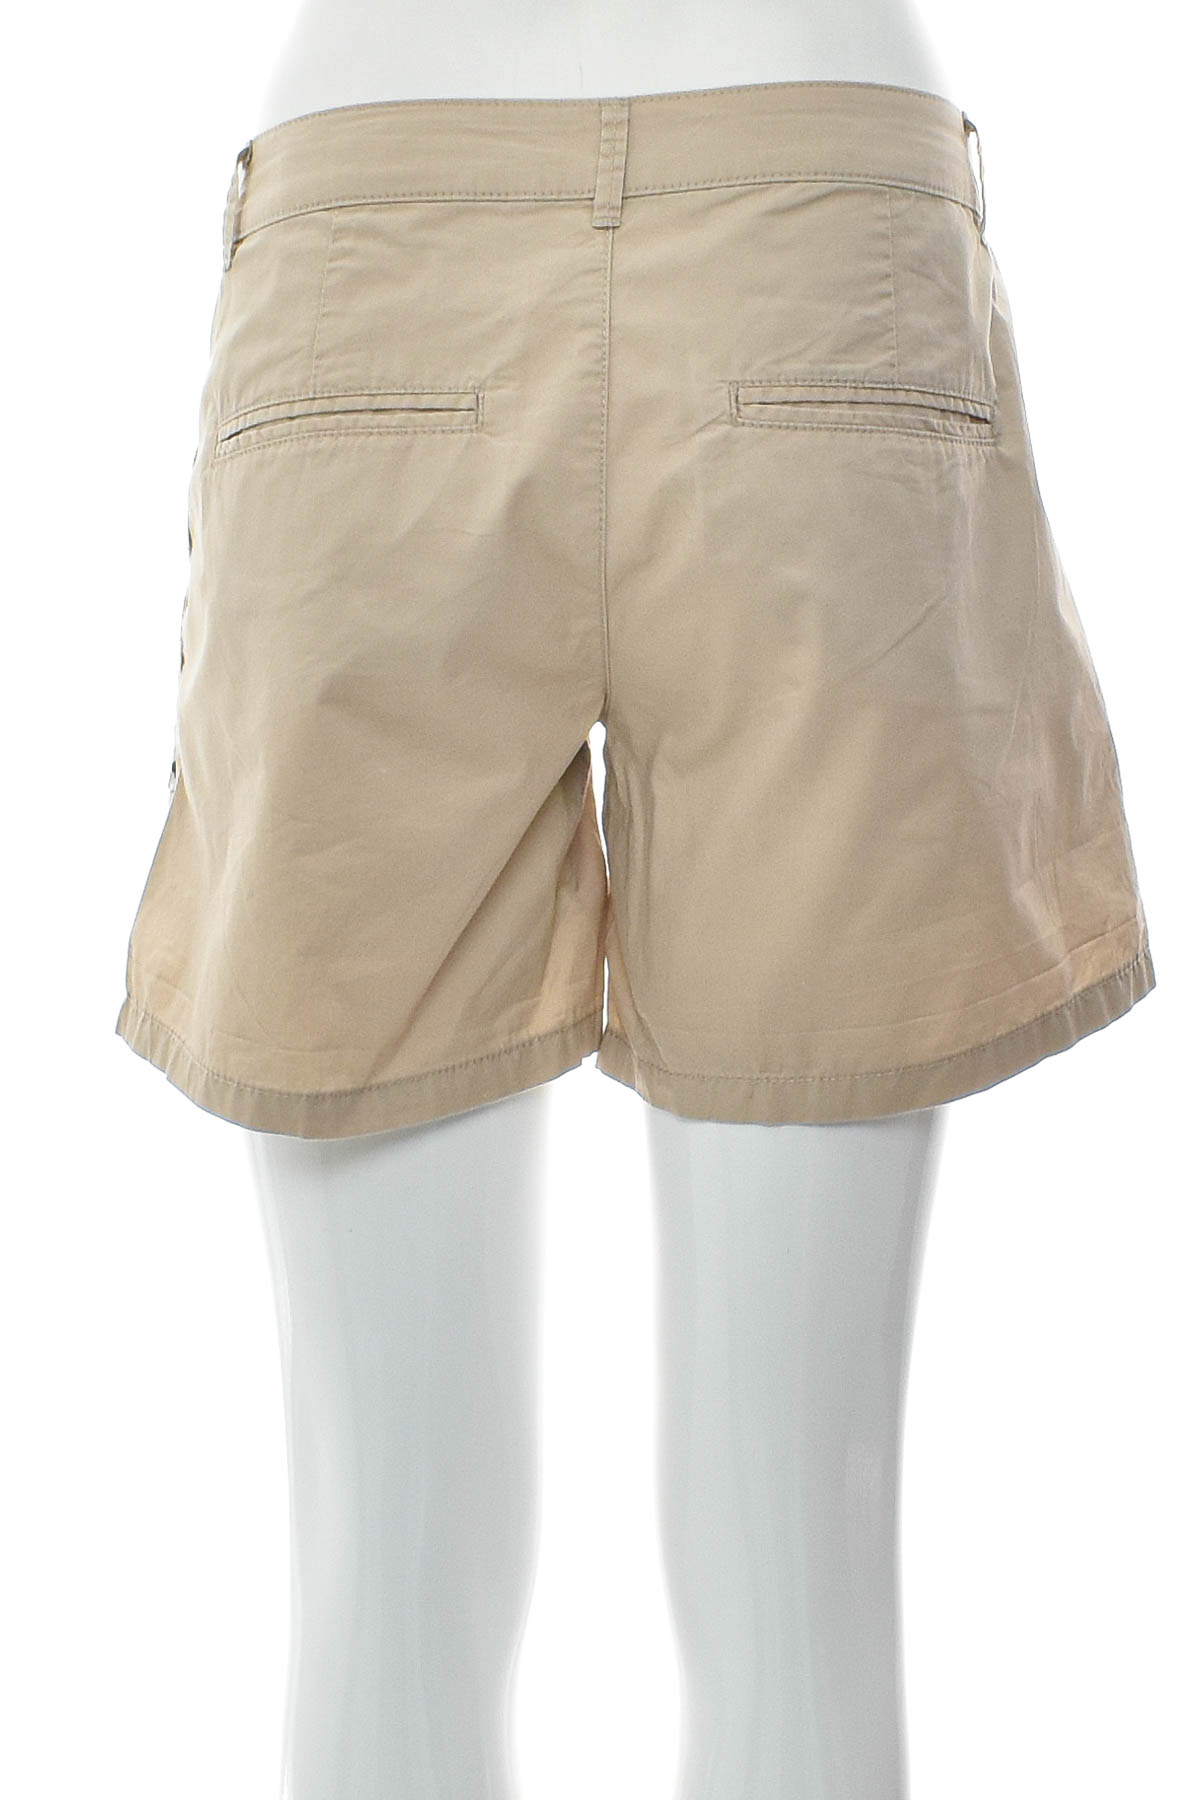 Γυναικείο κοντό παντελόνι - Edc - 1